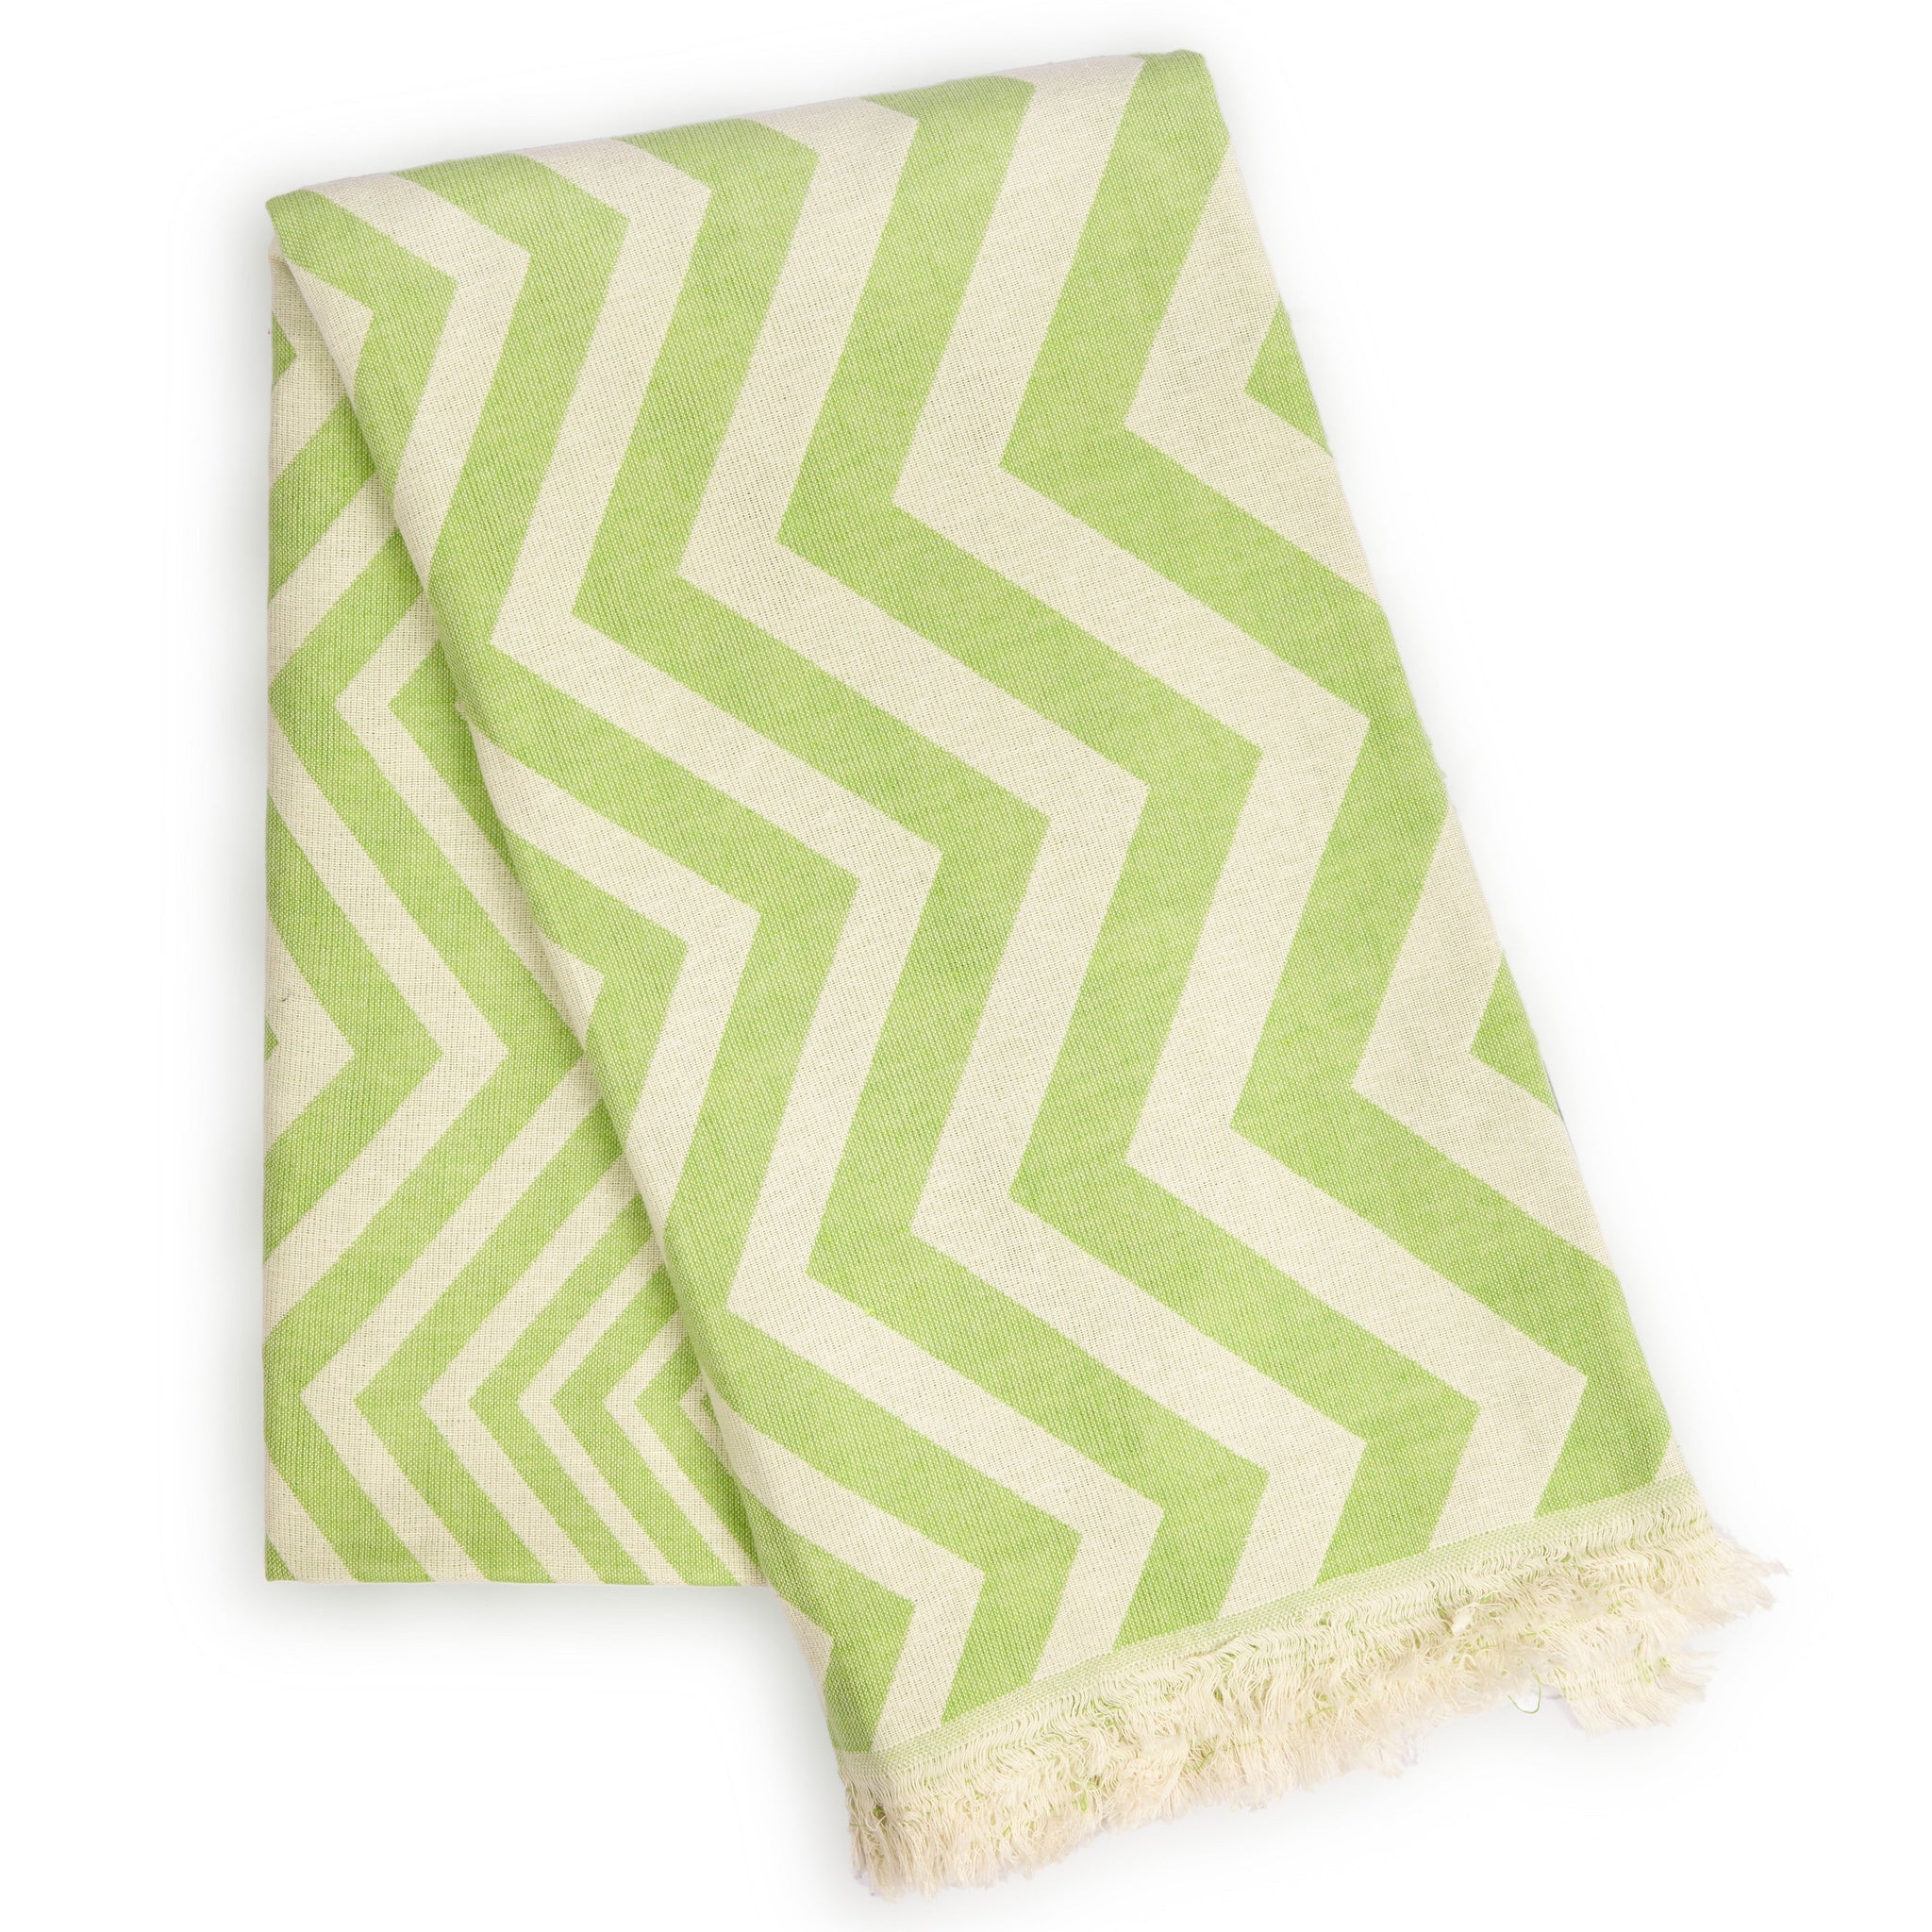 Mersin Chevron Towel / Blanket  - Green-0